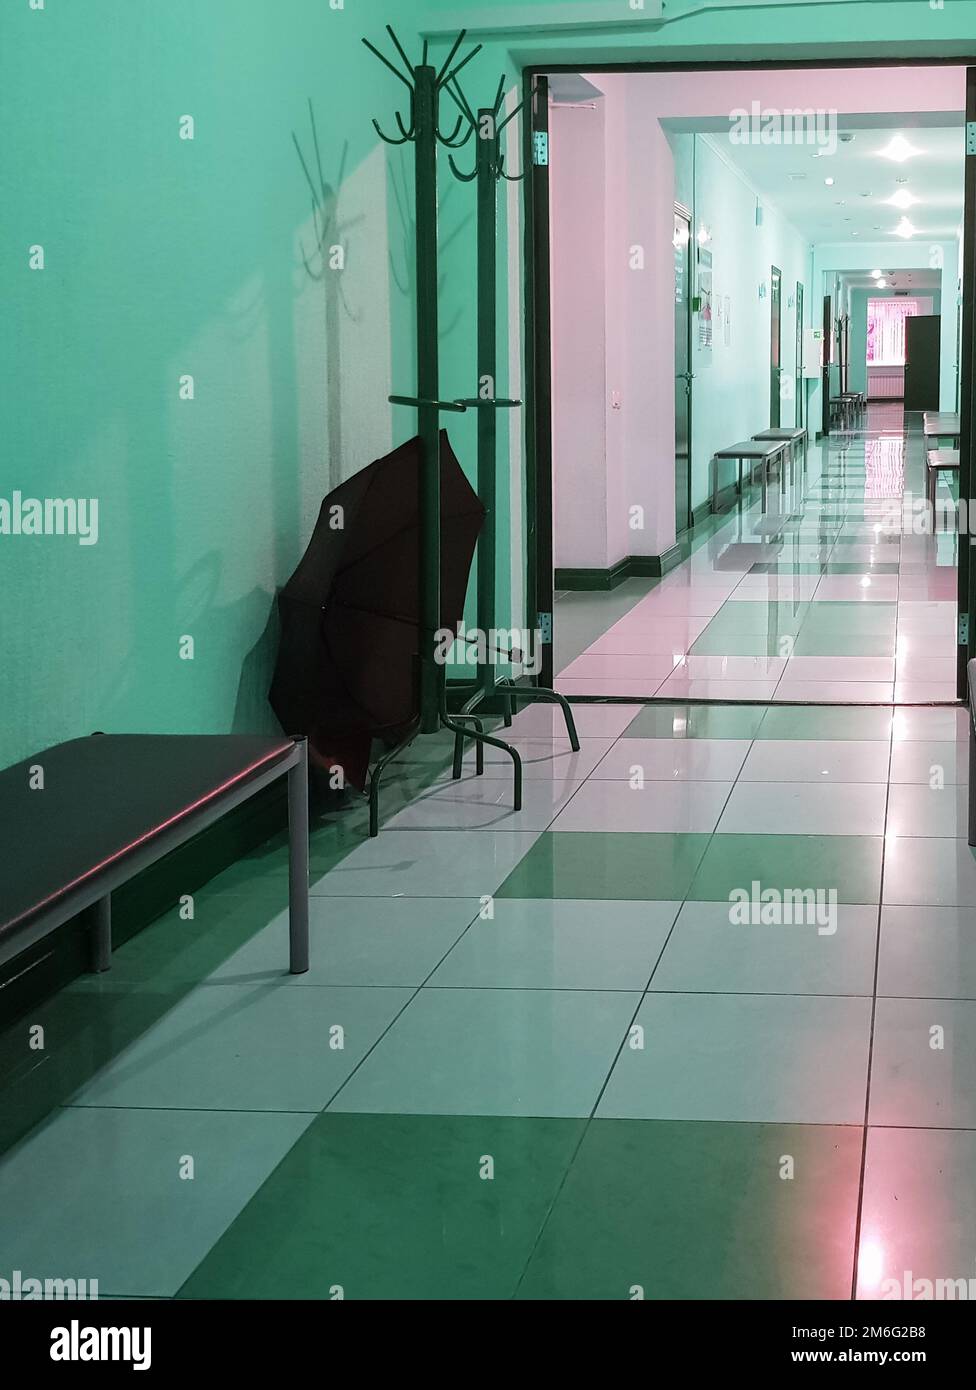 Holzständer mit offenem Schirm in einem leeren Raum des Korridors einer medizinischen Klinik, vertikal Stockfoto